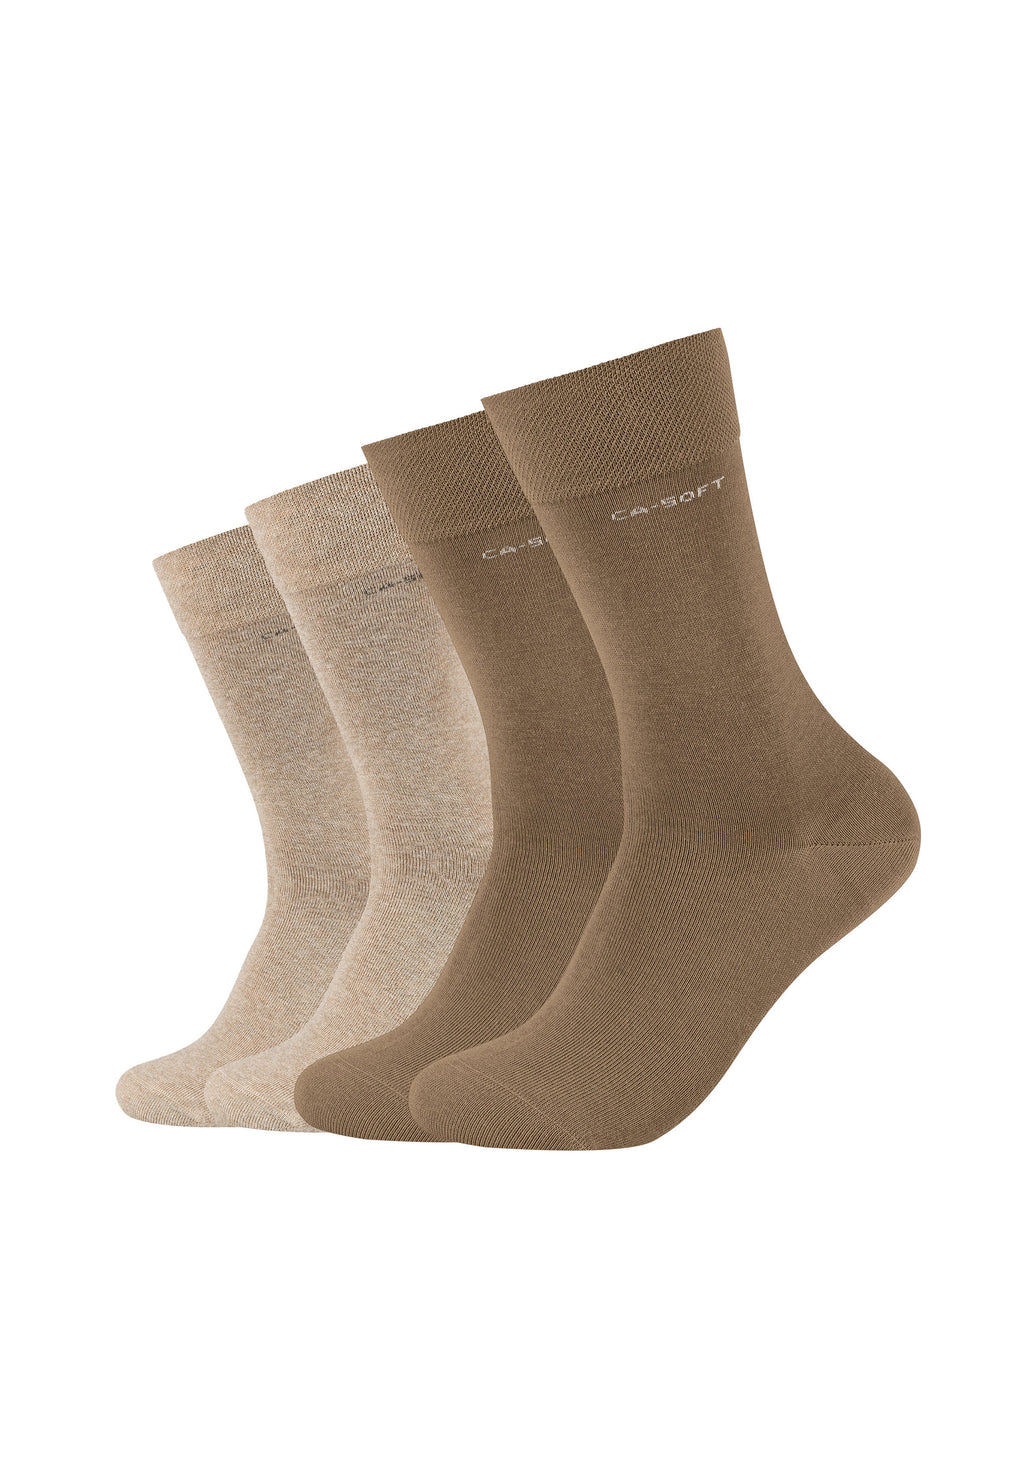 Socken ca-soft – ONSKINERY 4er Pack